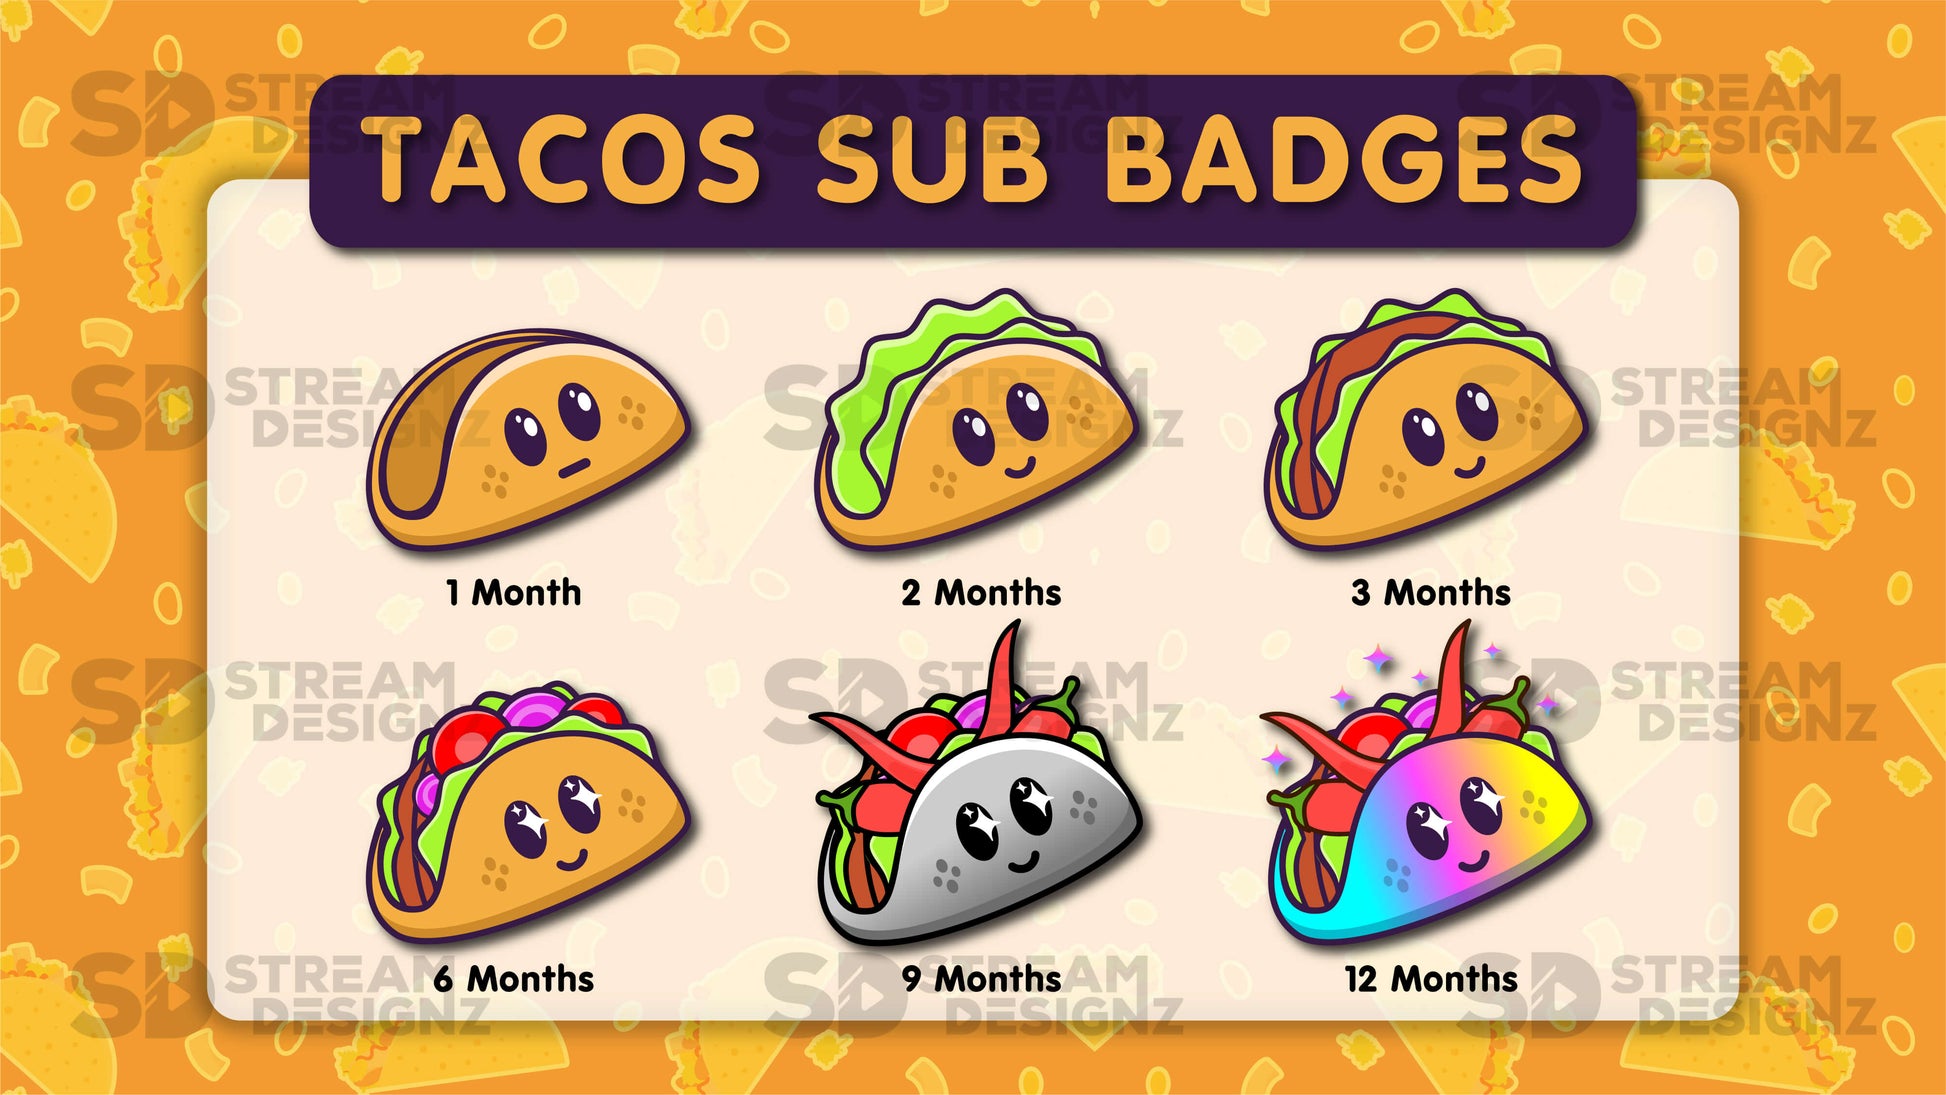 6 pack sub badges preview image tacos stream designz